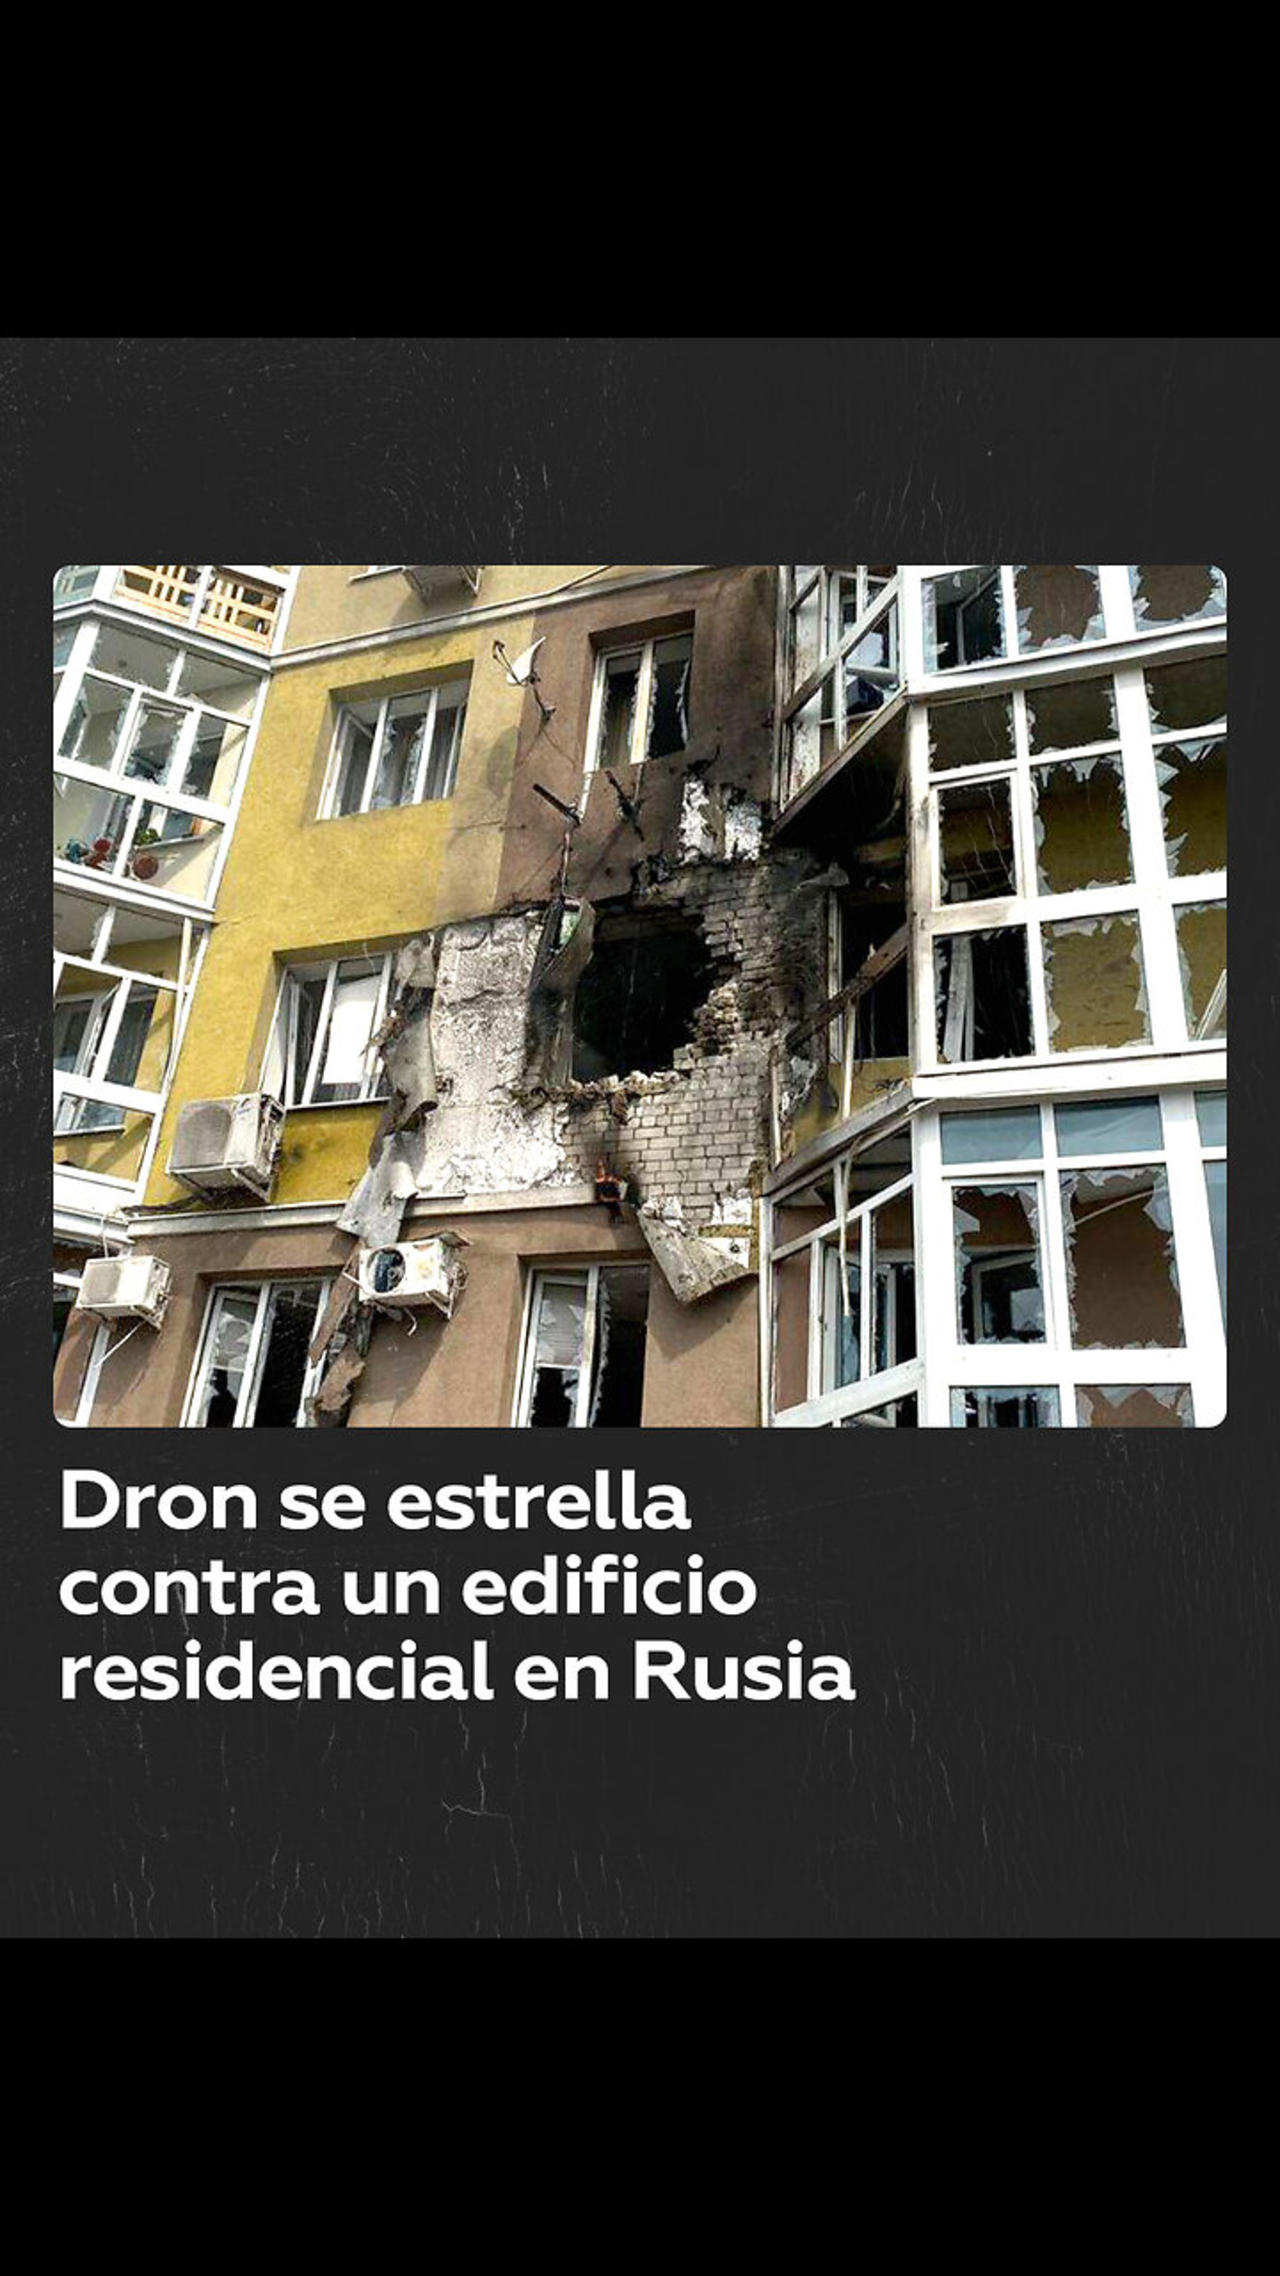 Un dron explota al impactar en un edificio residencial en la ciudad rusa de Vorónezh